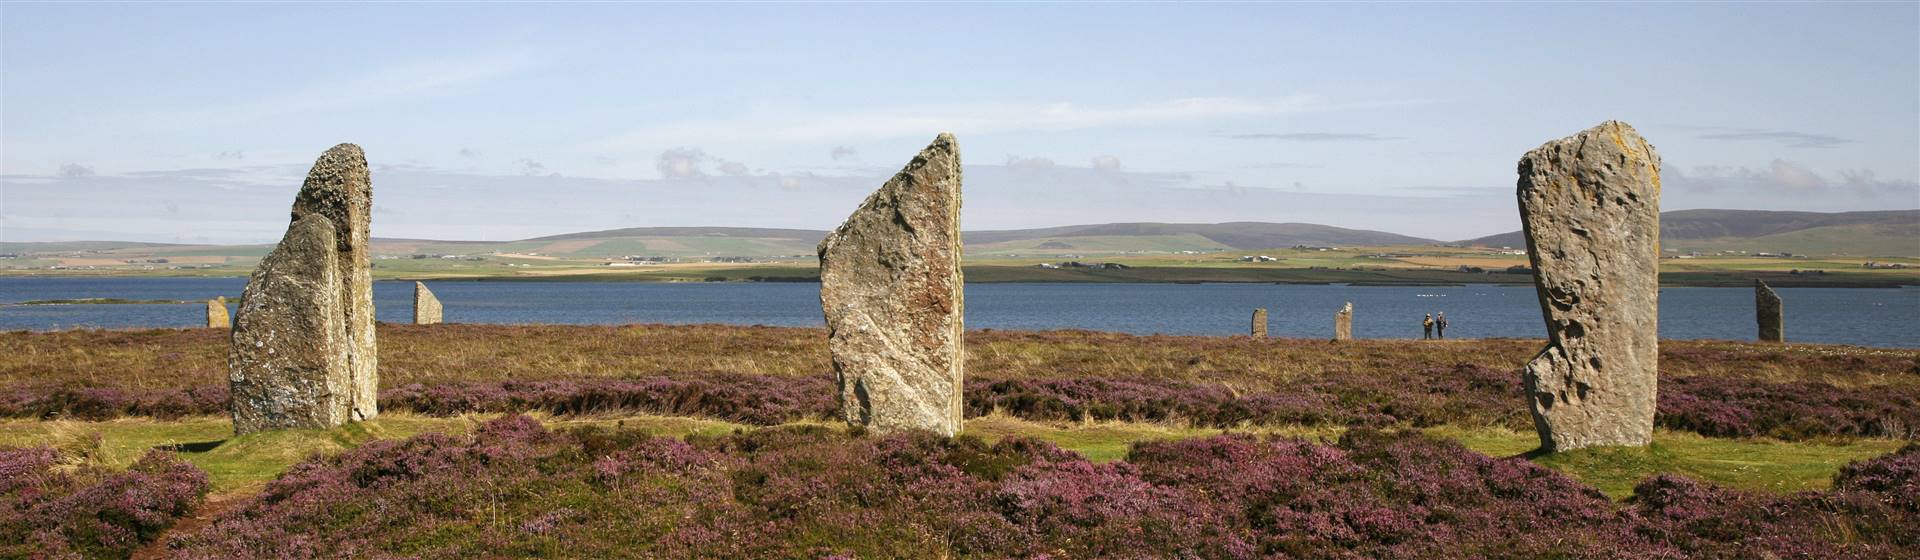 Ring of Brodgar Orkney - Visit Scotland / Paul Tomkins